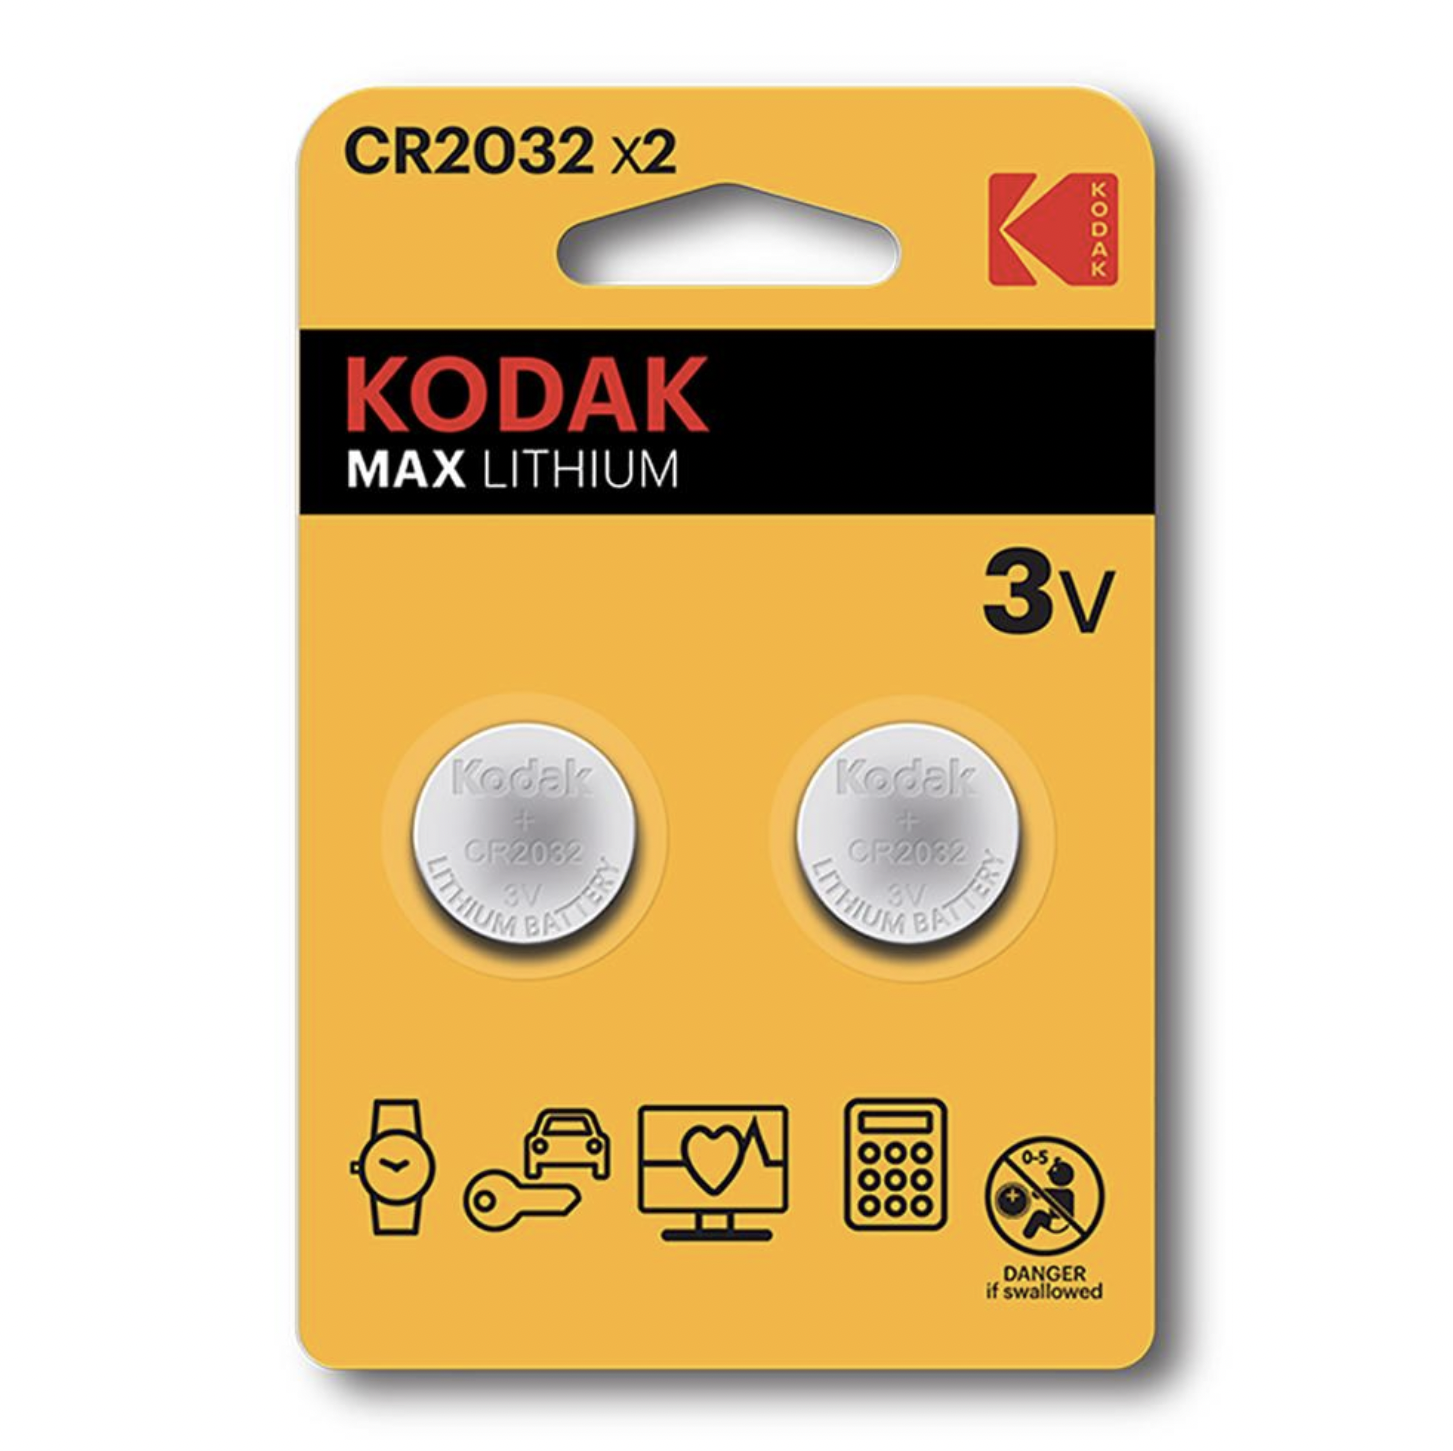   / Kodak -  Max Lithium CR2032 3V 2 